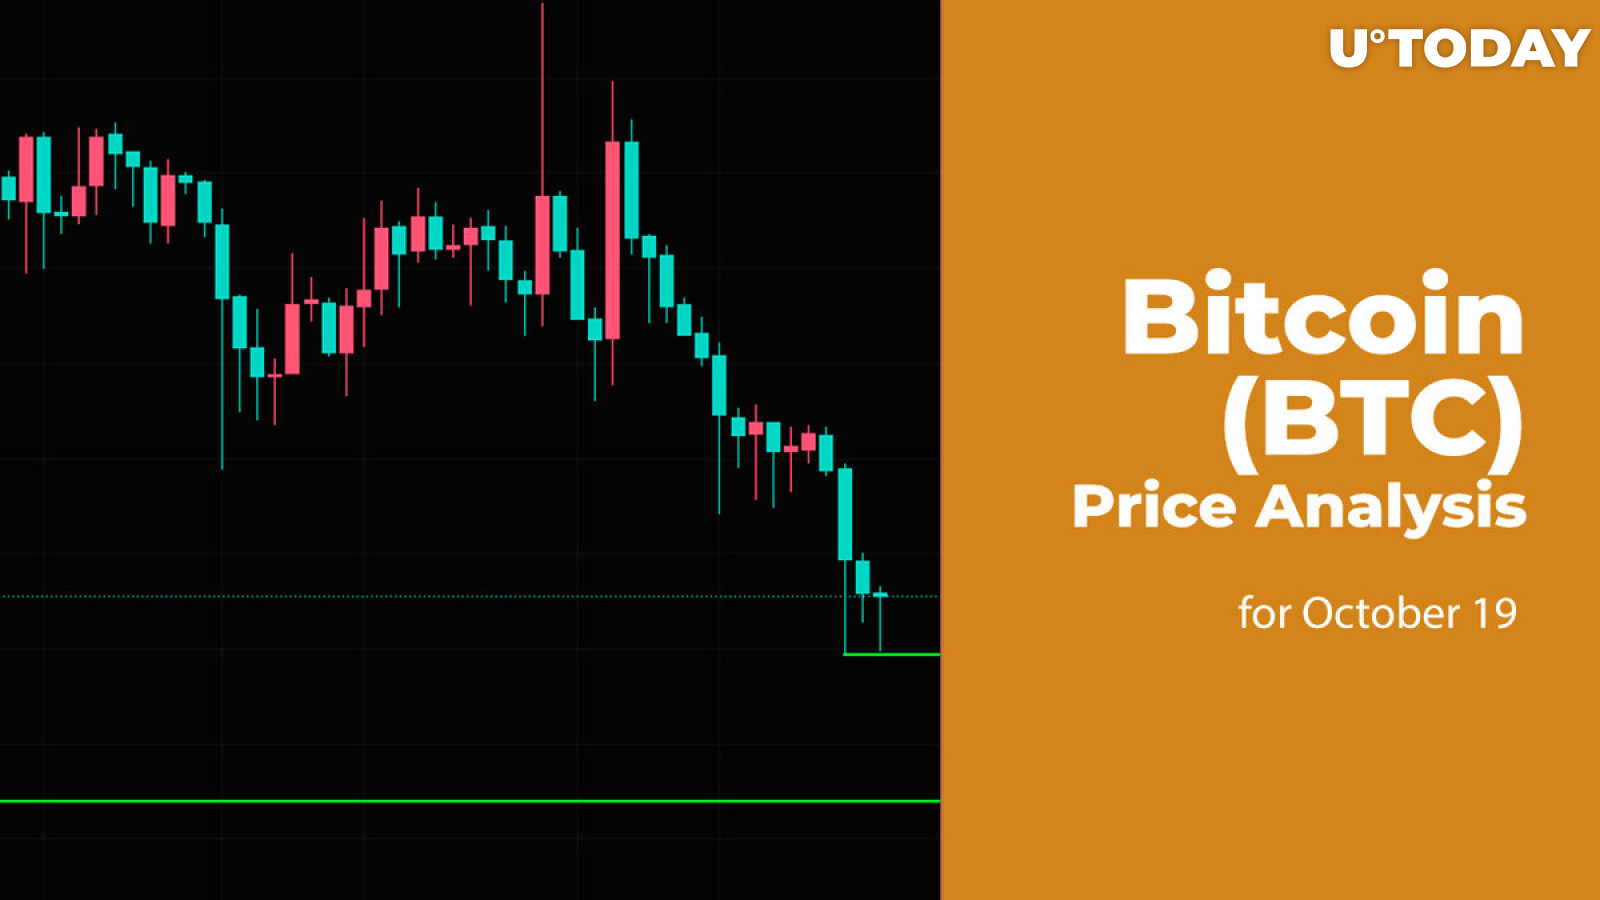 Bitcoin (BTC) Price Analysis for October 19